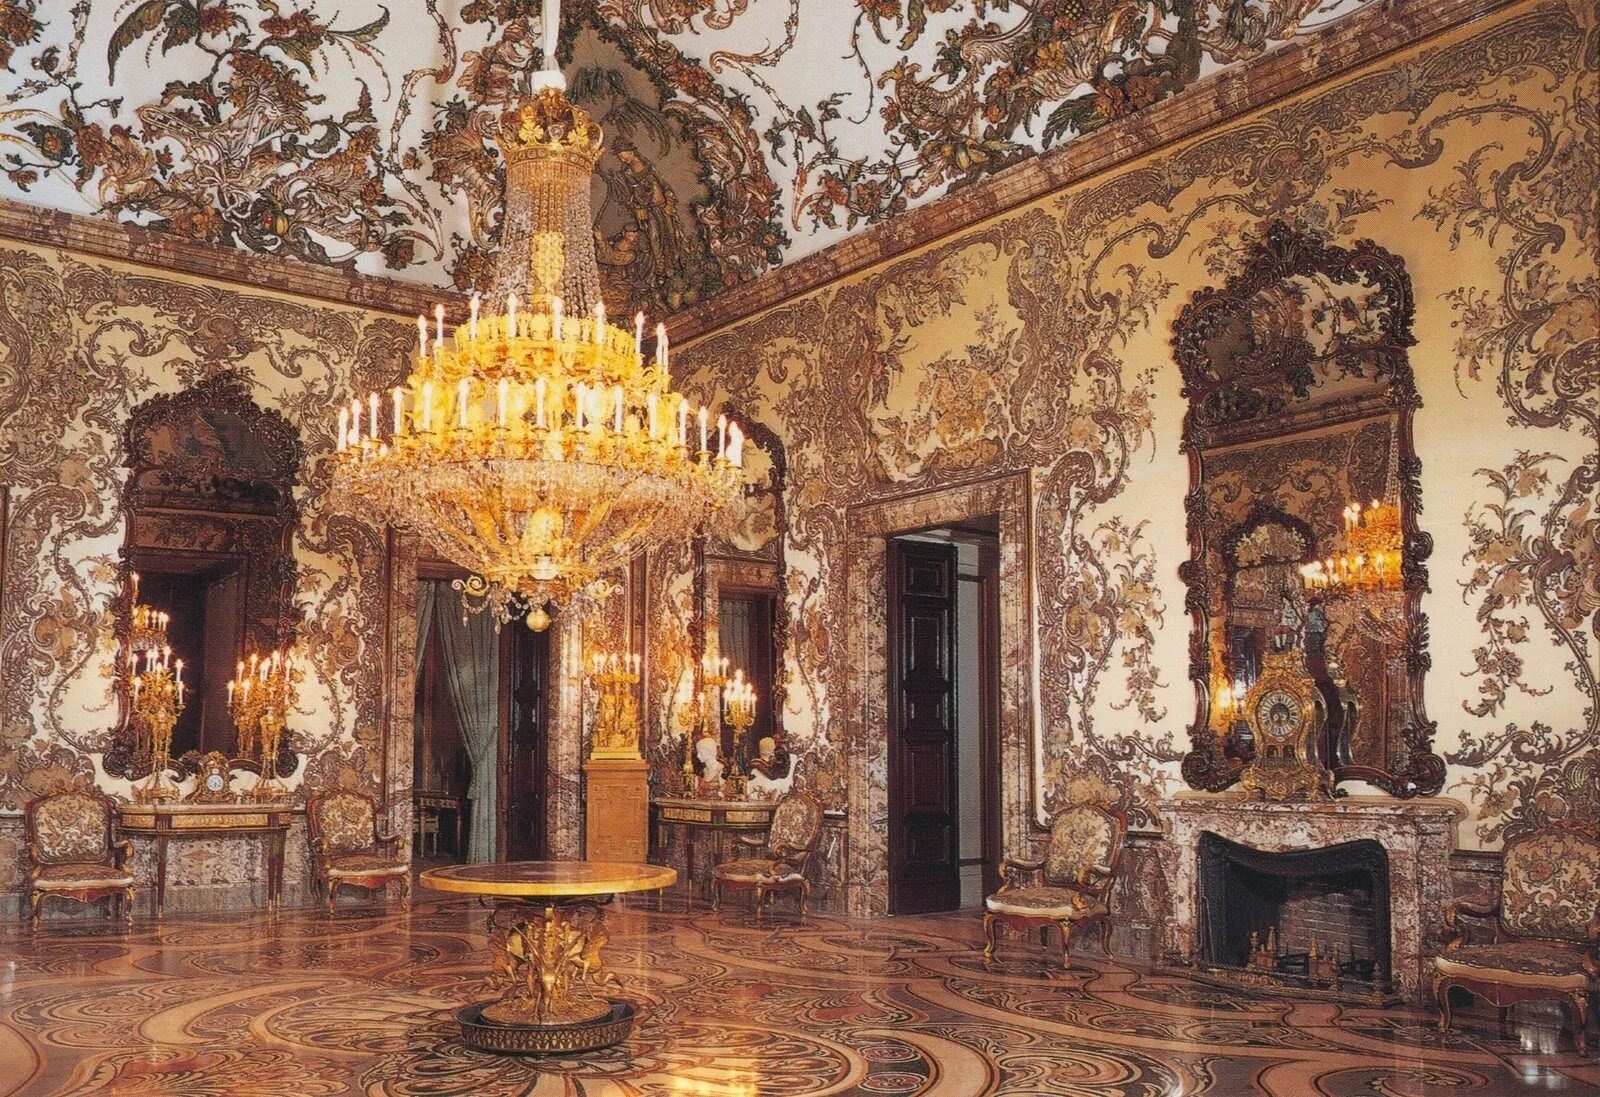 Королевский дворец в Мадриде зал Гаспарини. Королевский дворец в Мадриде зал Гаспарини Барокко. Королевский дворец Мадрид Барокко интерьер. Дворец 17 века рококо Барокко.